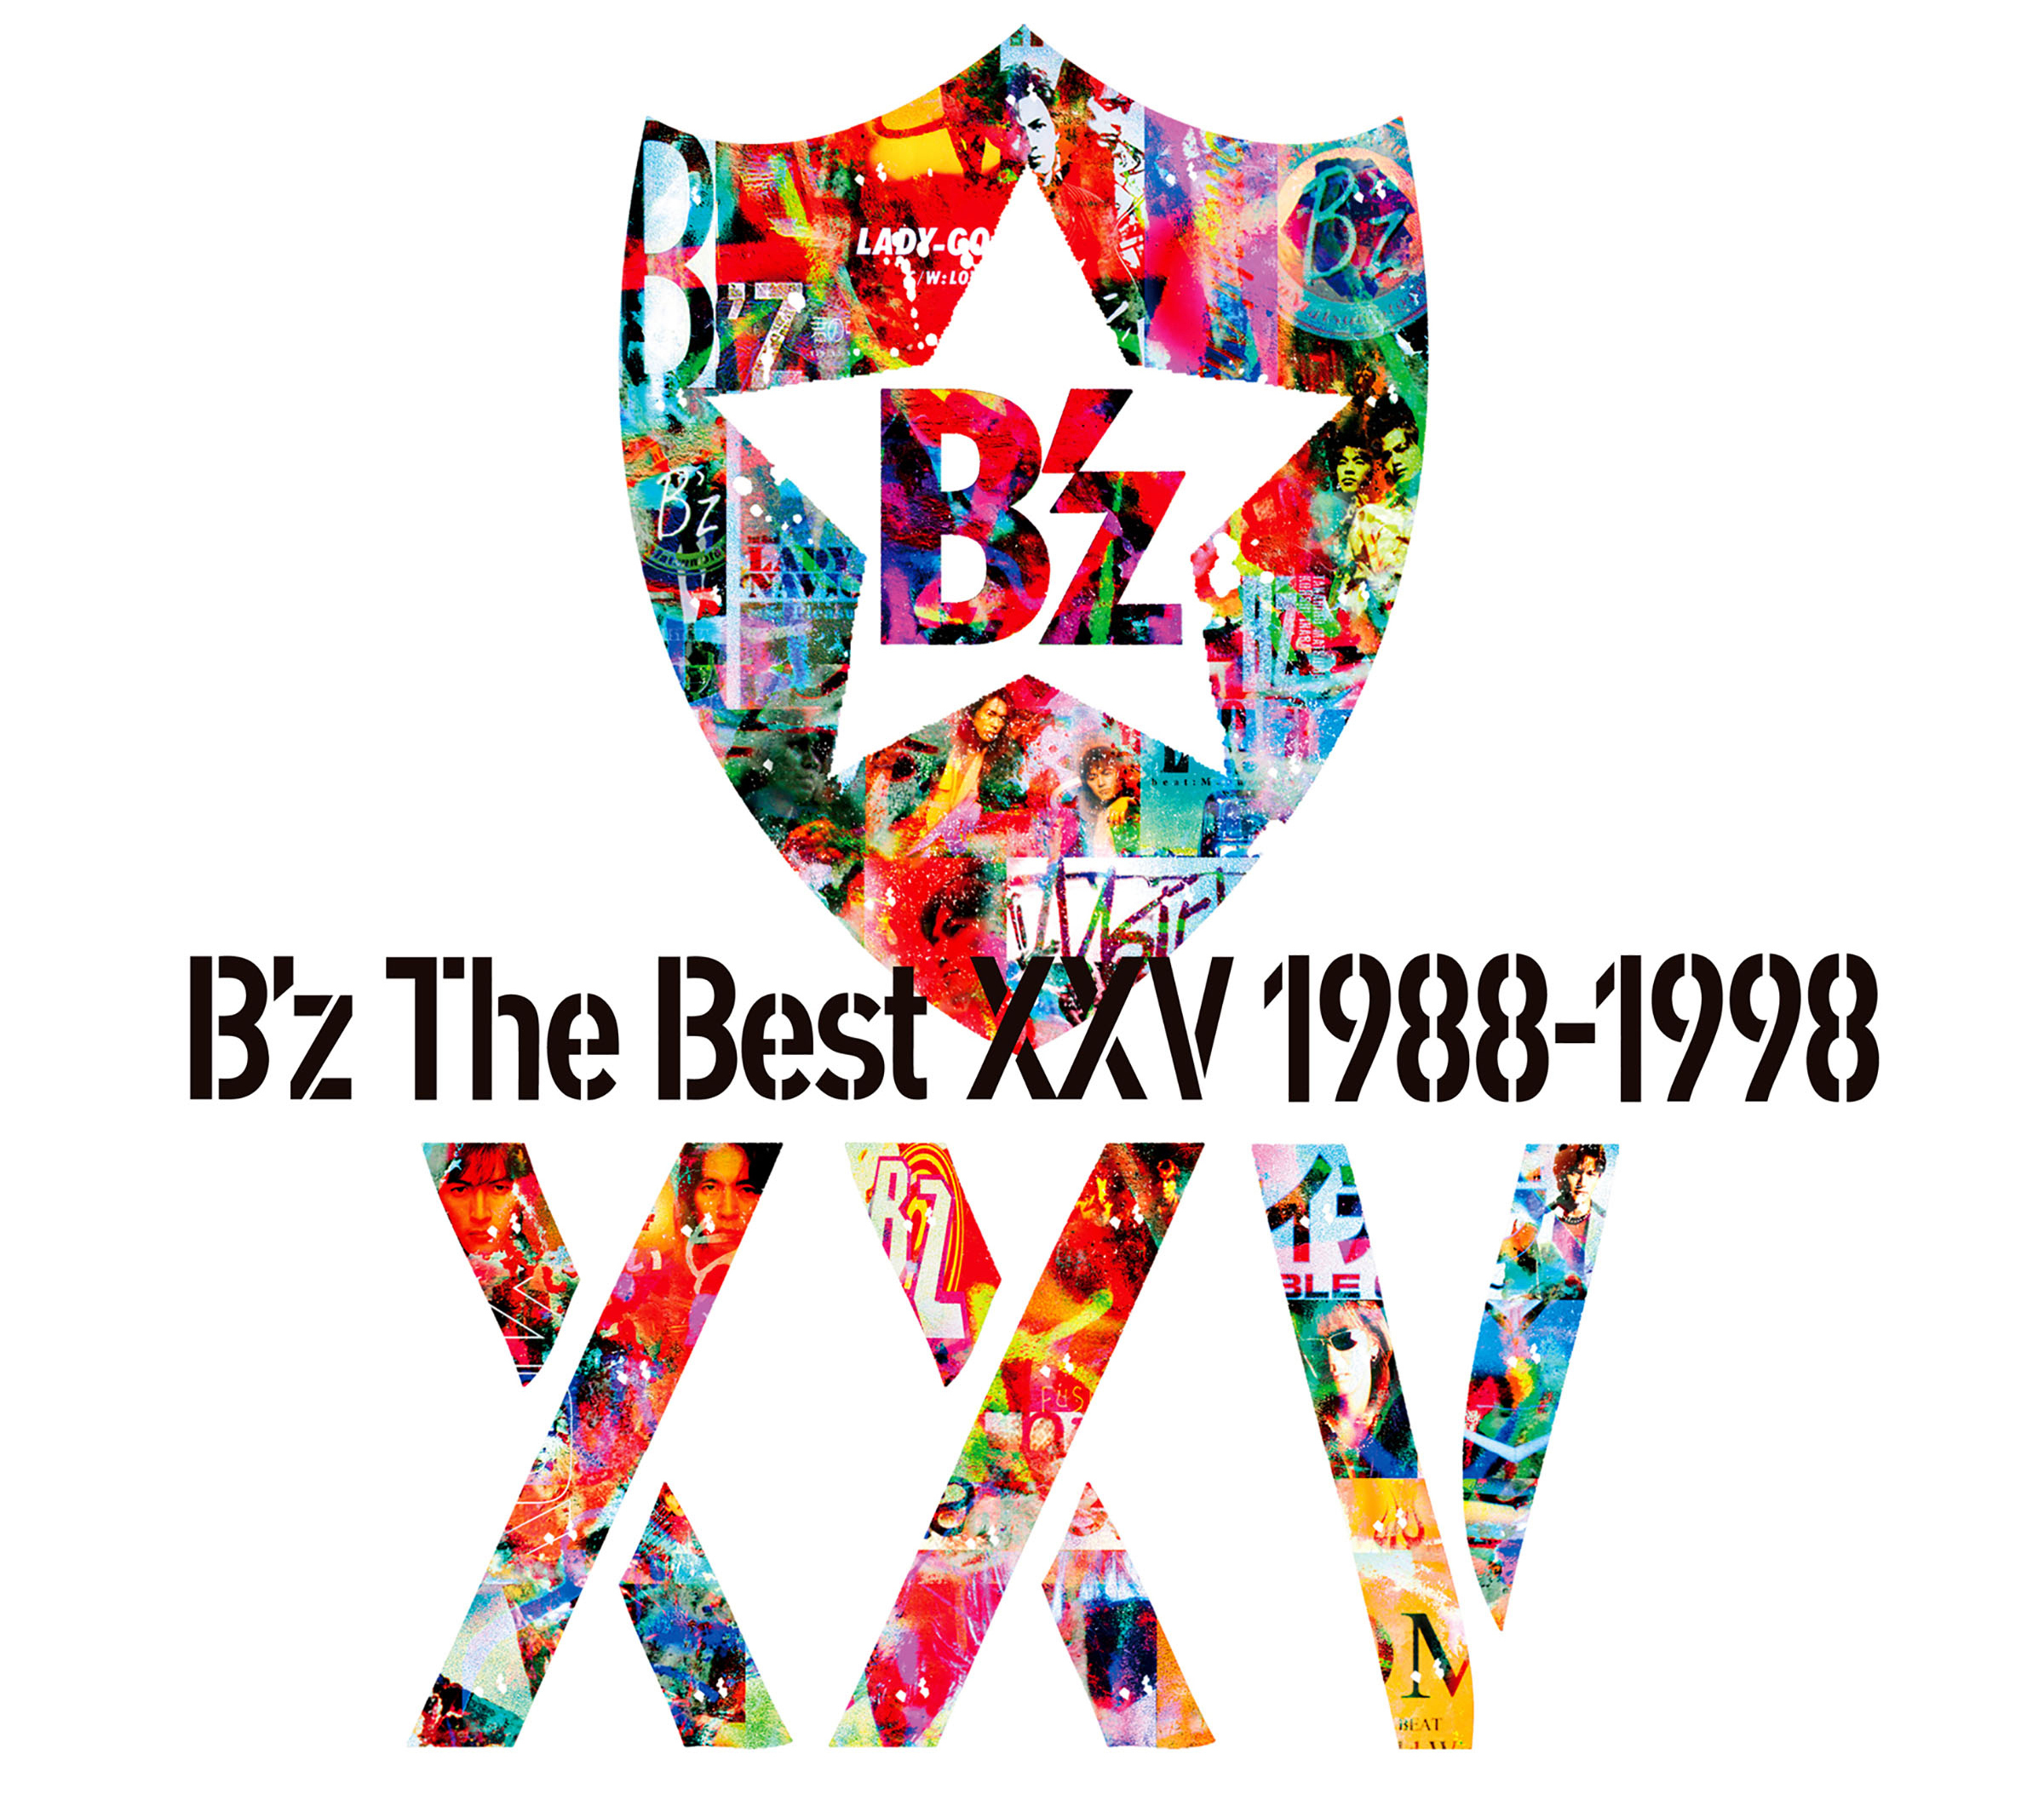 B'z (ビーズ) オールシングル・ベストアルバム『B'z The Best XXV 1988-1998』(2013年6月12日発売) 高画質CDジャケット画像 (ジャケ写)